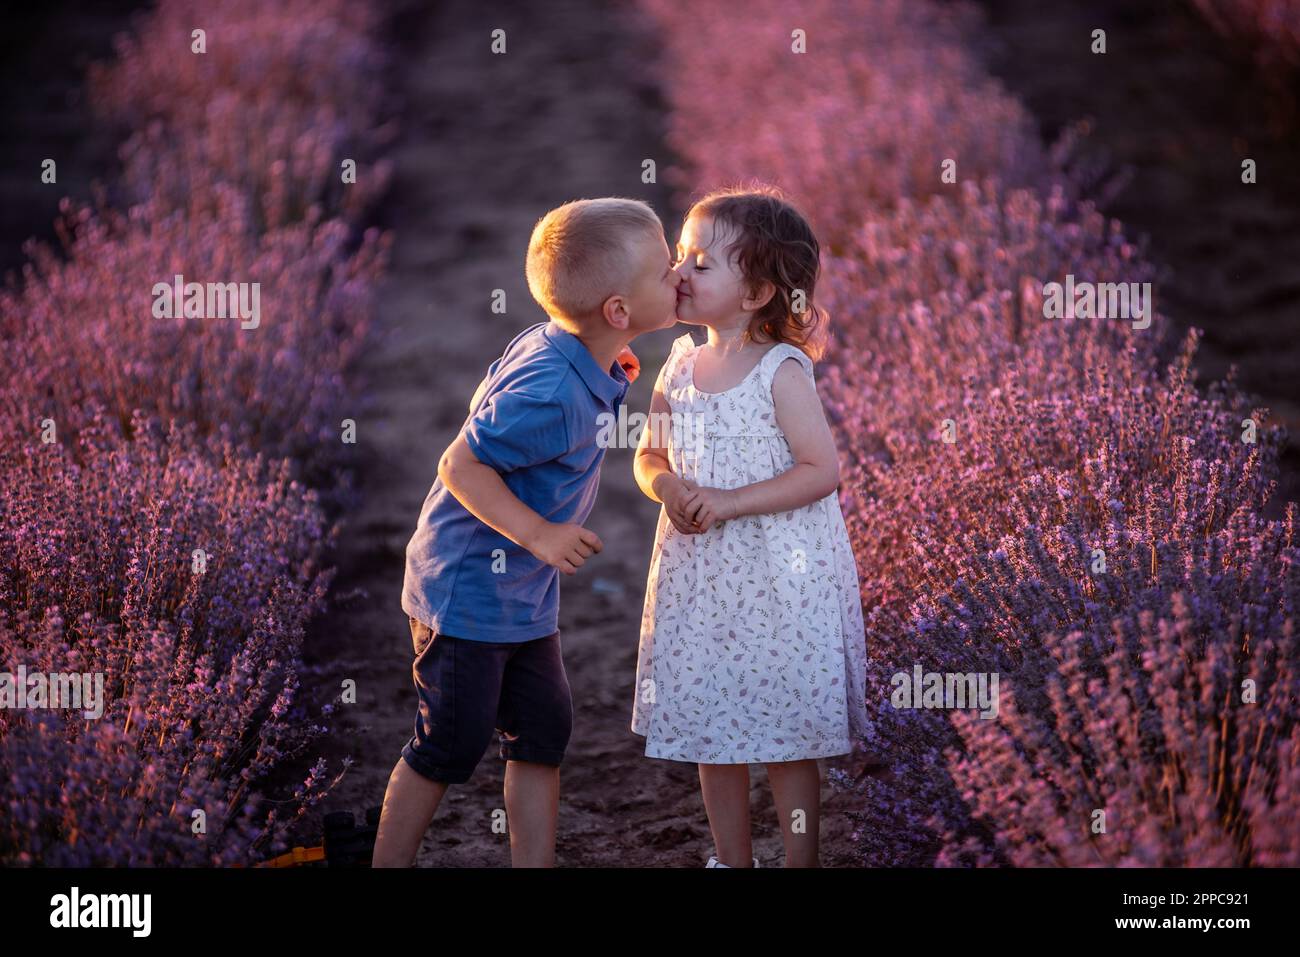 Primo piano ritratto della bambina che bacia il ragazzo sulla guancia nelle file di campo di lavanda viola. Coppia carina amorevole dei bambini hanno divertimento nella natura. FAM Foto Stock